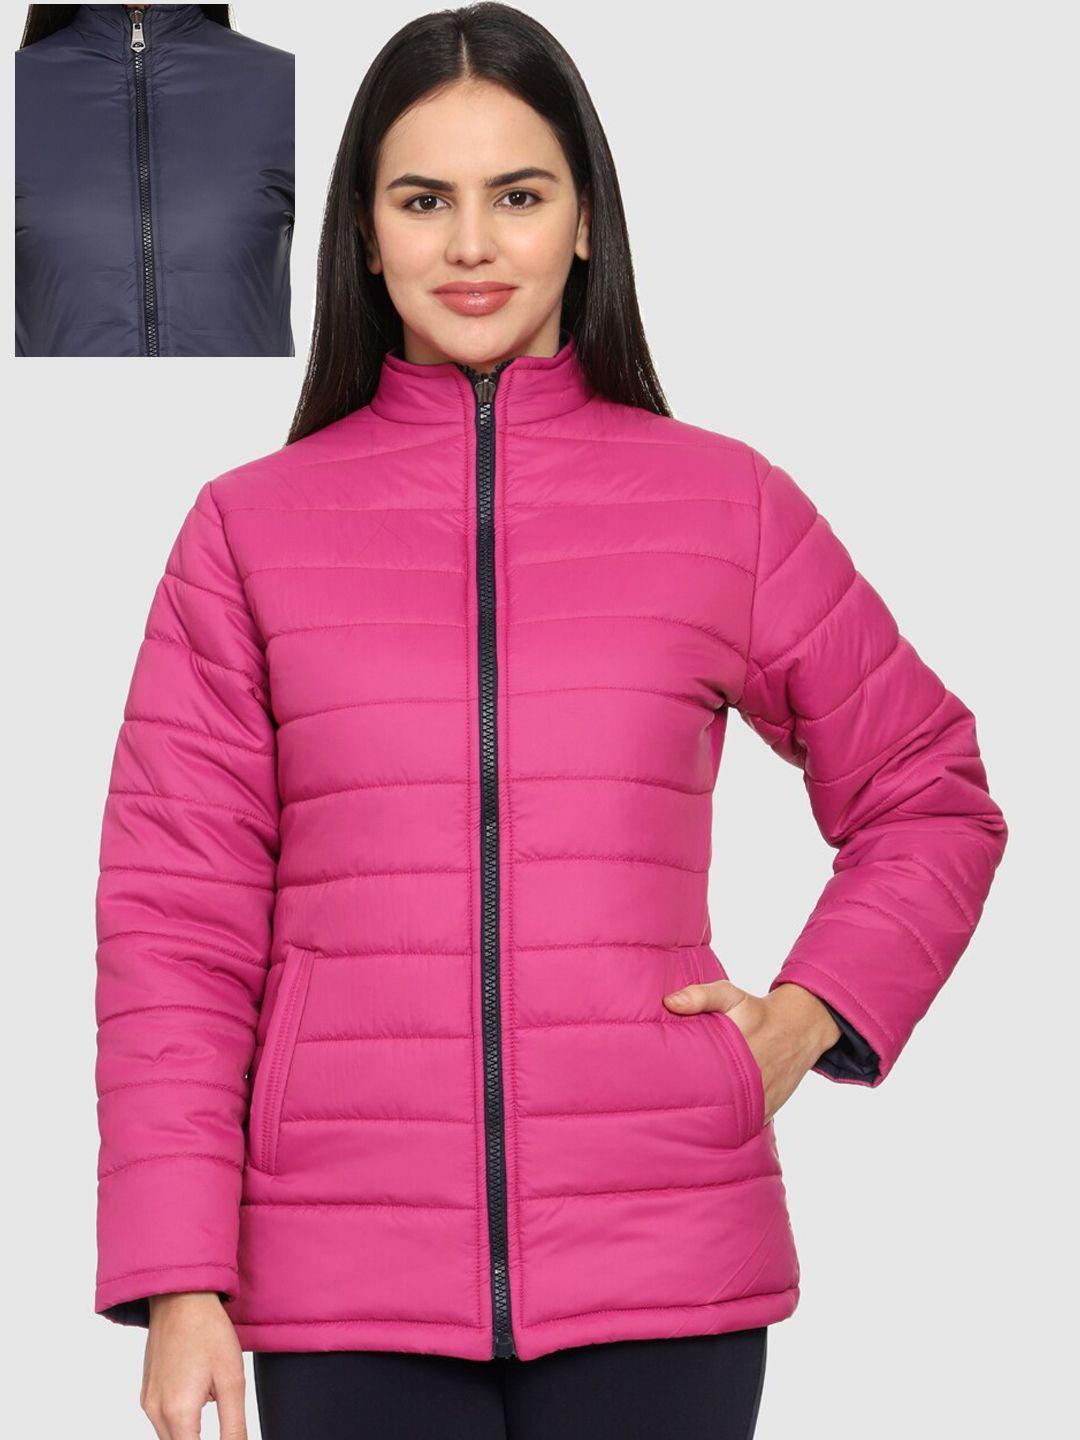 cl sport women navy blue & pink reversible puffer jacket